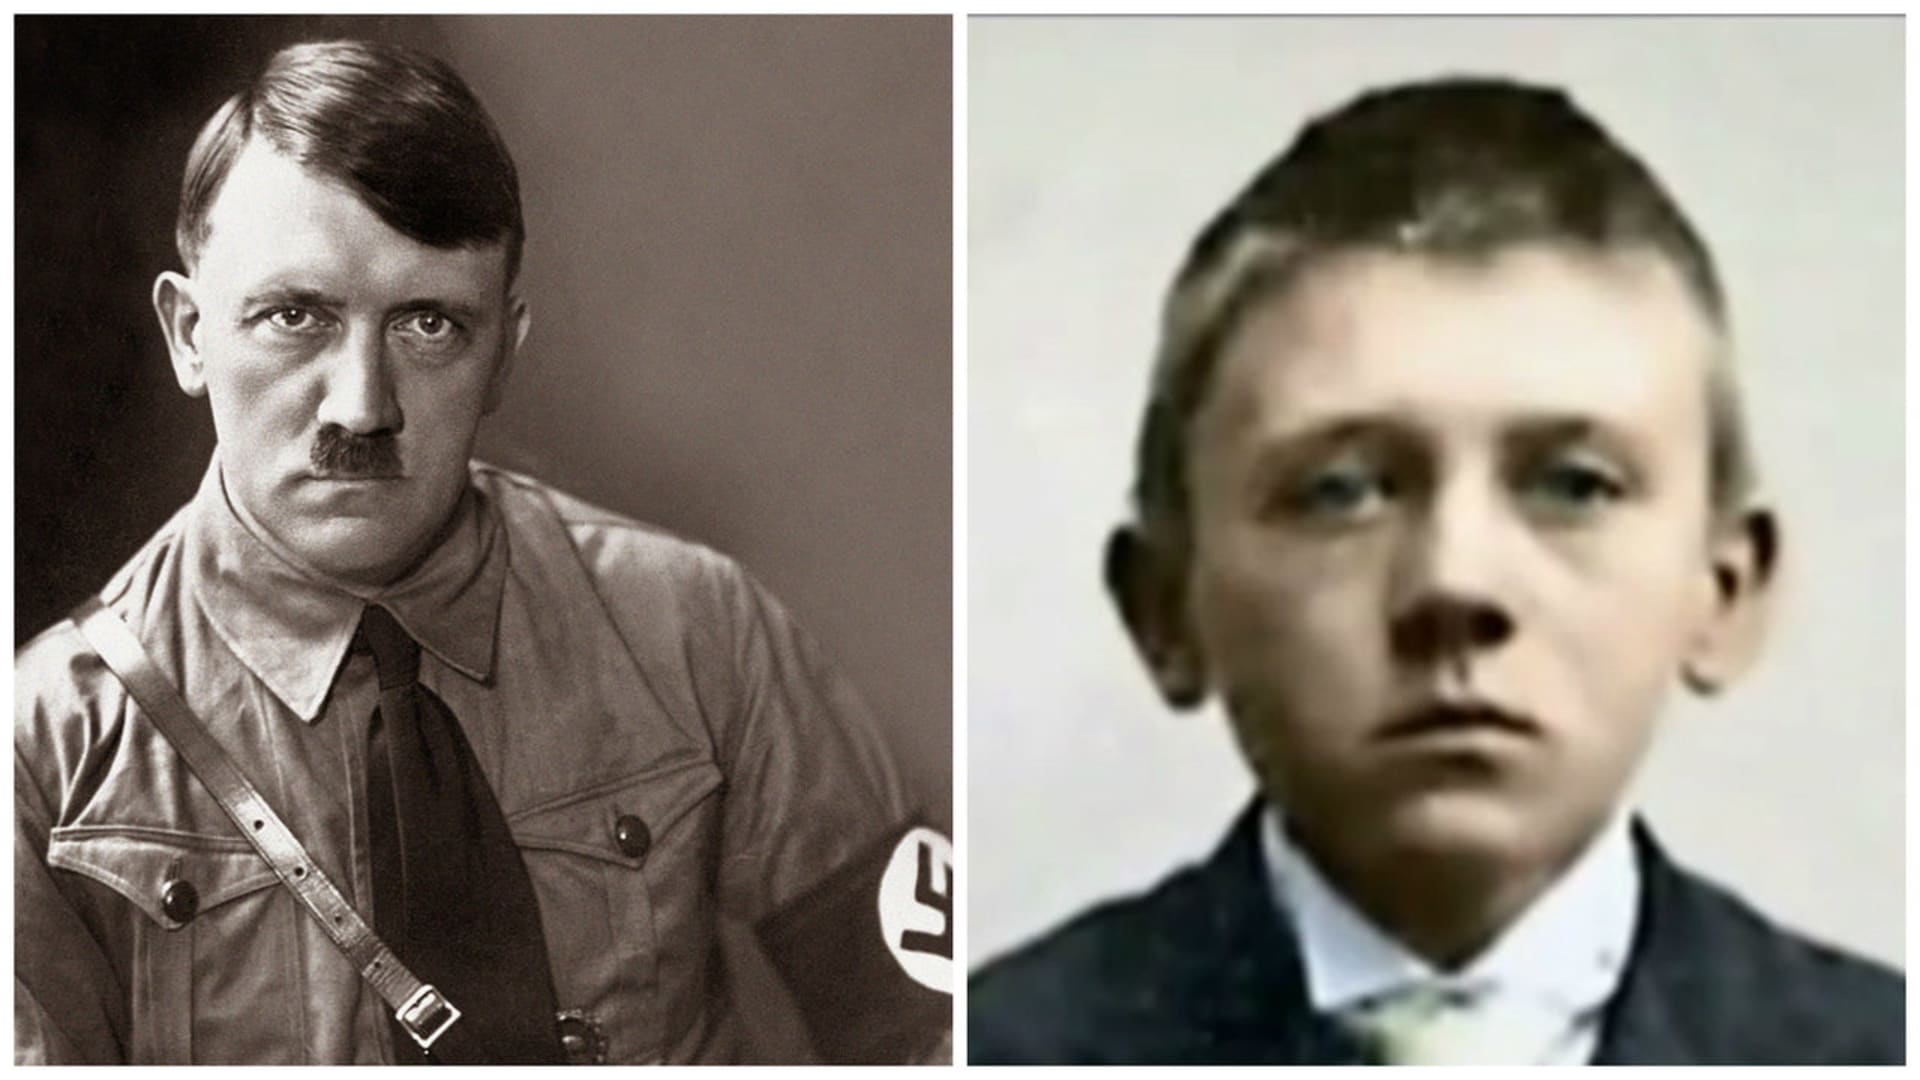 Co potkalo Hitlera v dětství?